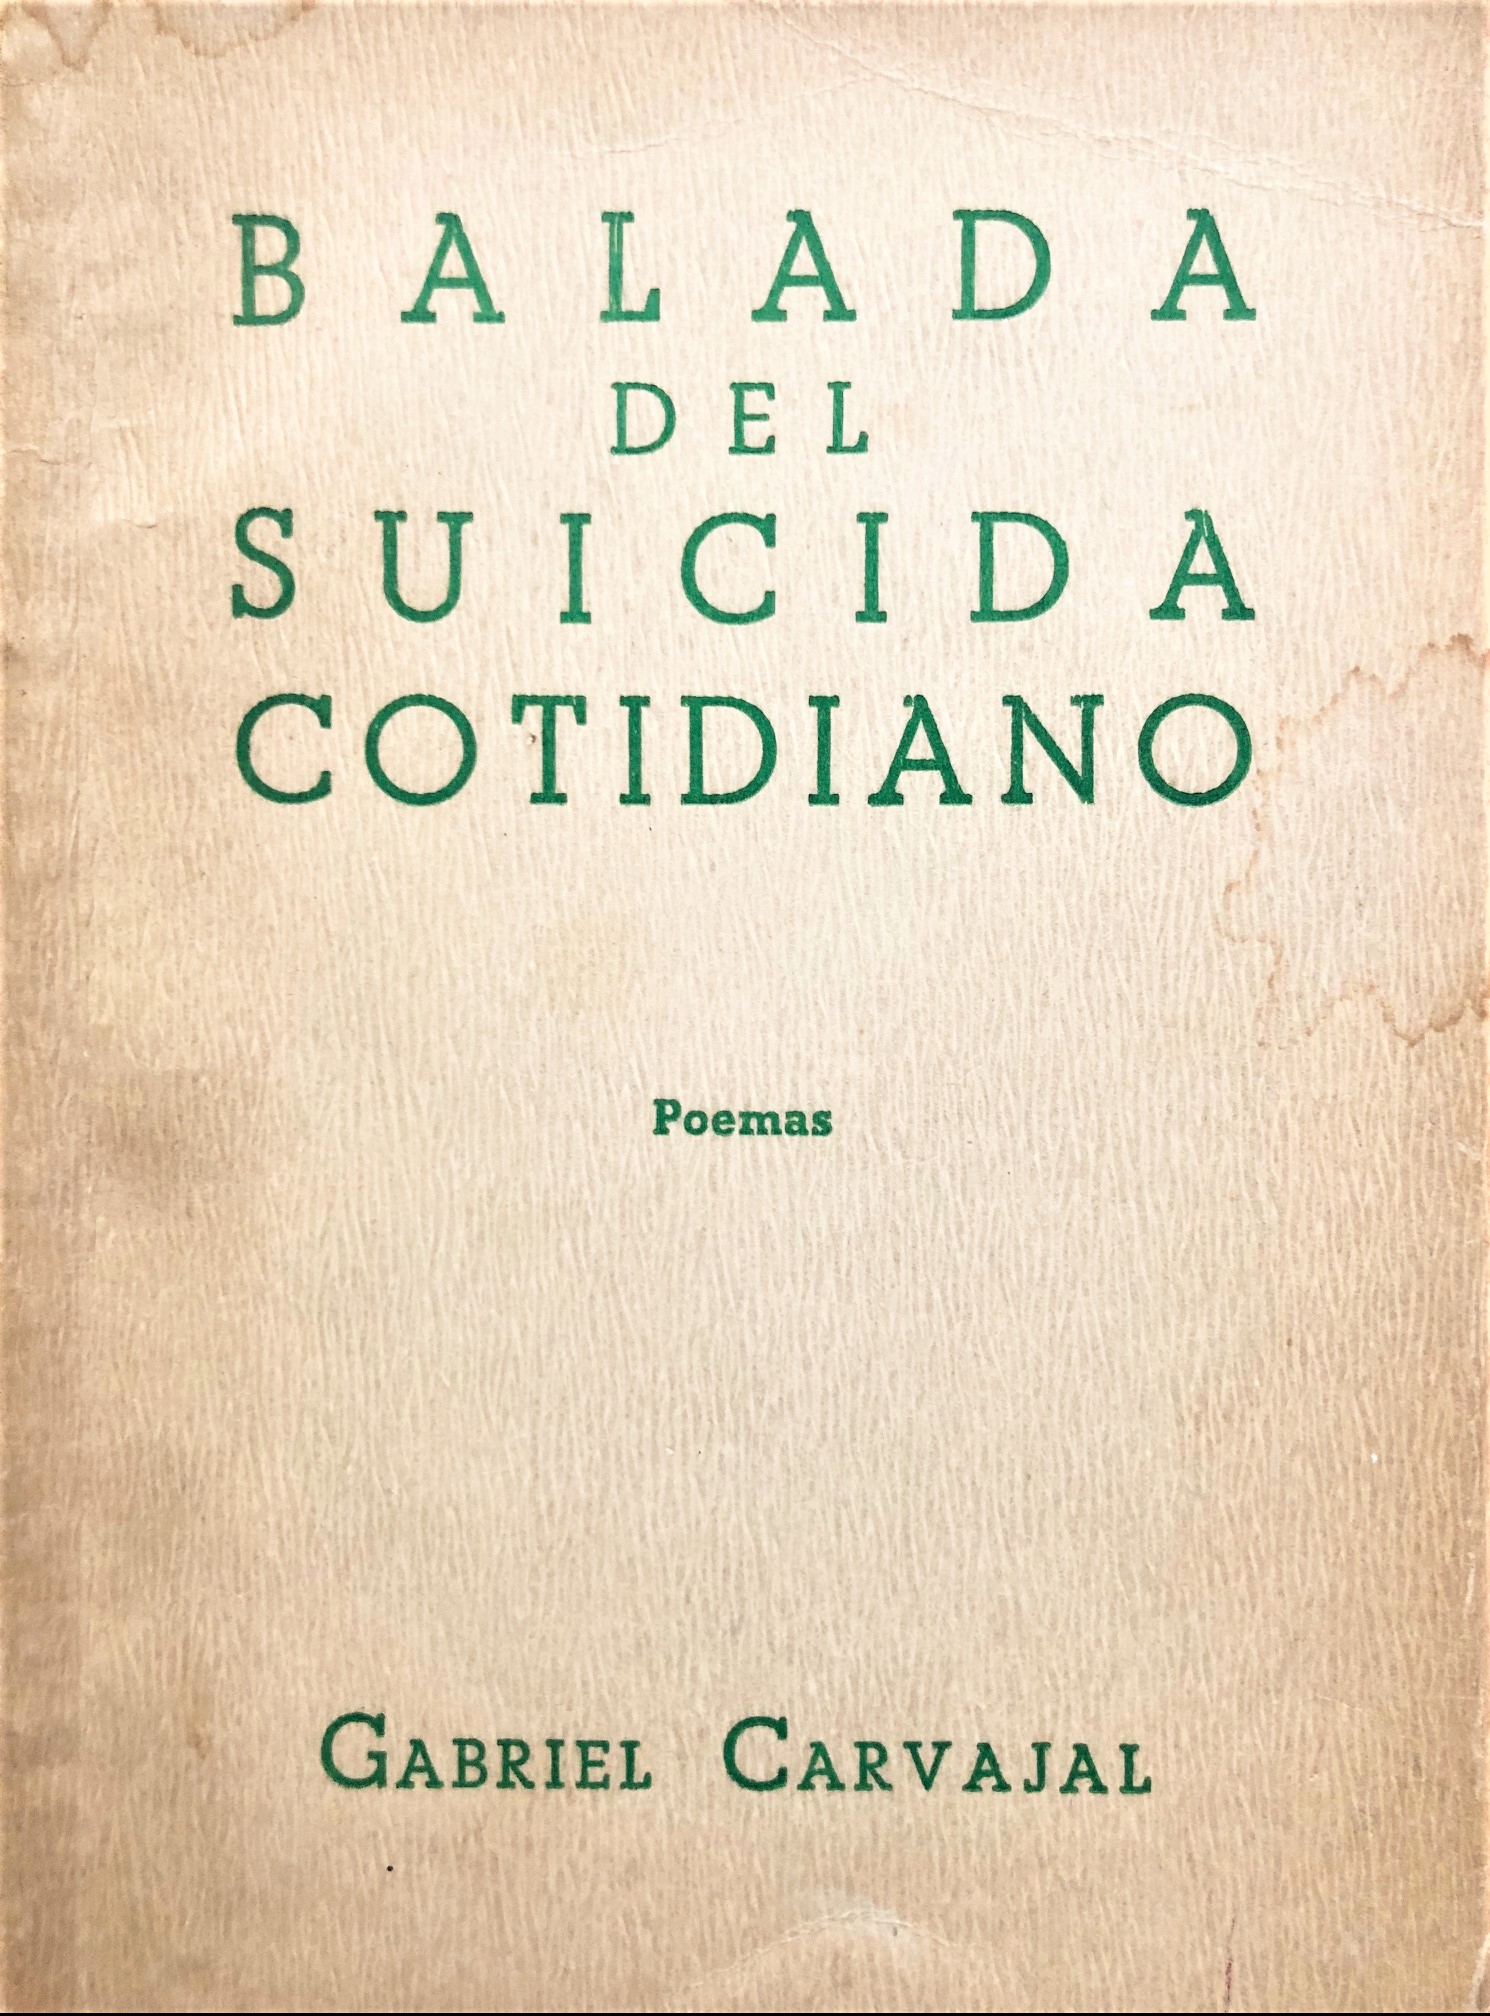 Gabriel Carvajal - Balada del suicida cotidiano 